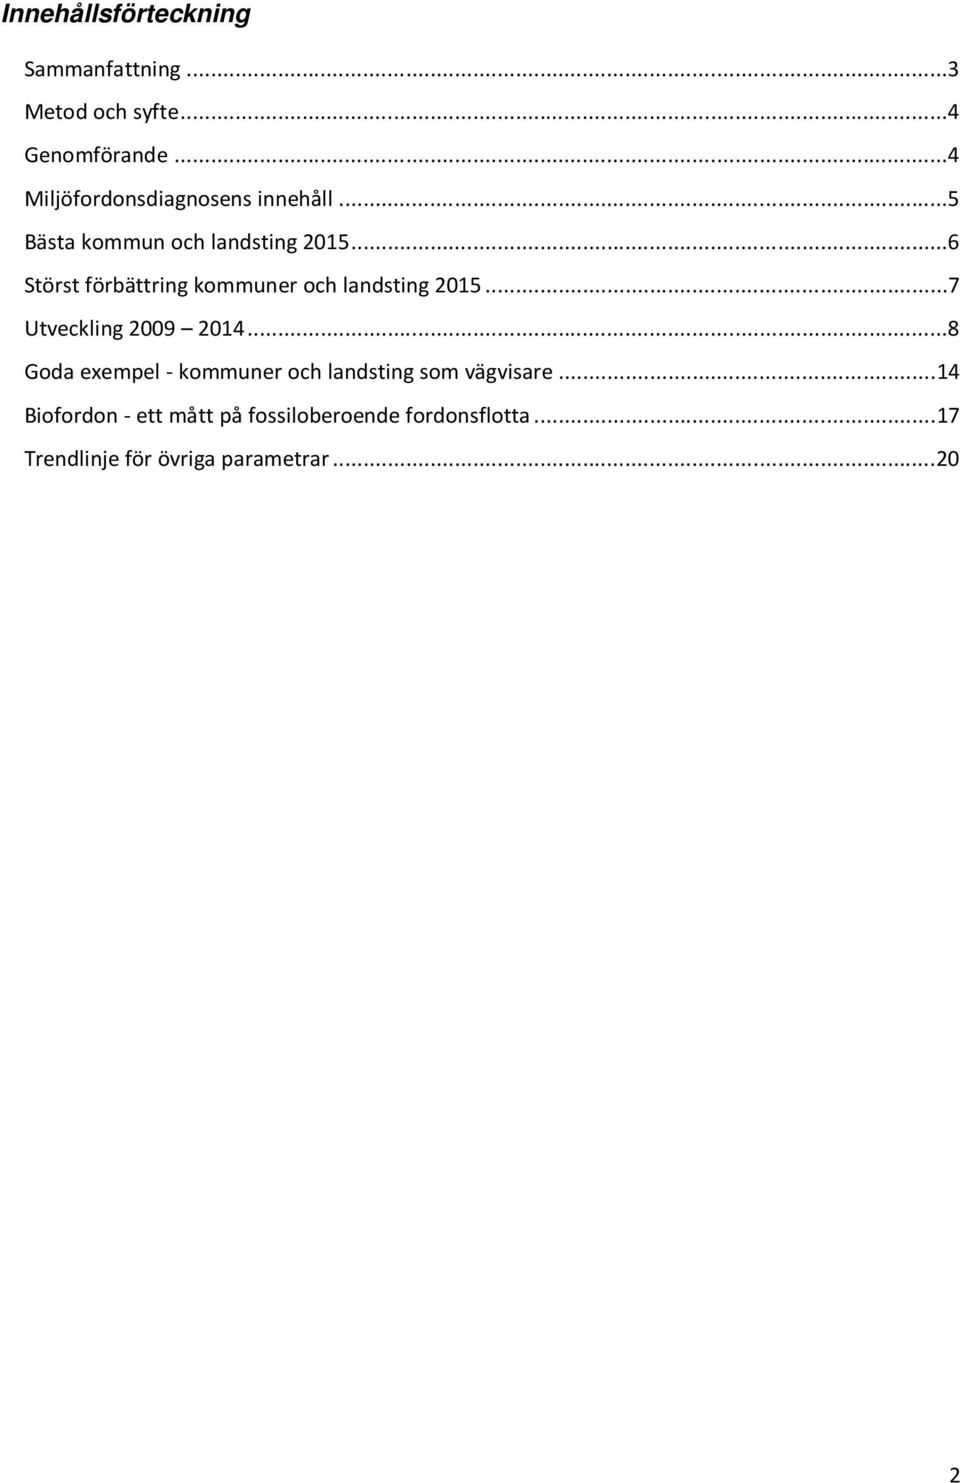 ..6 Störst förbättring kommuner och landsting 2015...7 Utveckling 2009 2014.